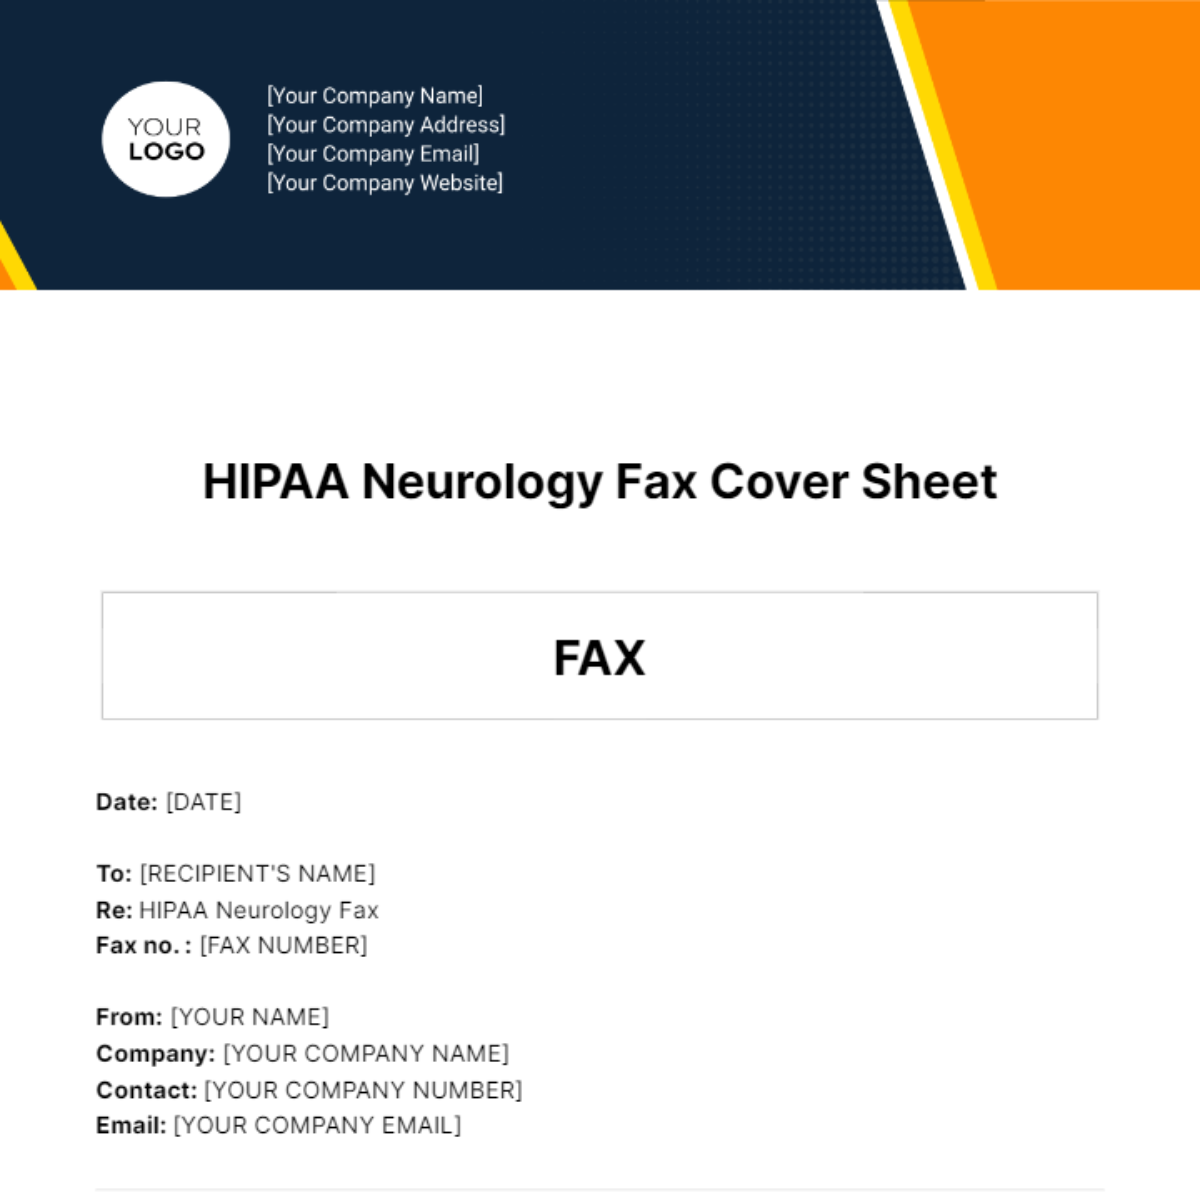 HIPAA Neurology Fax Cover Sheet Template